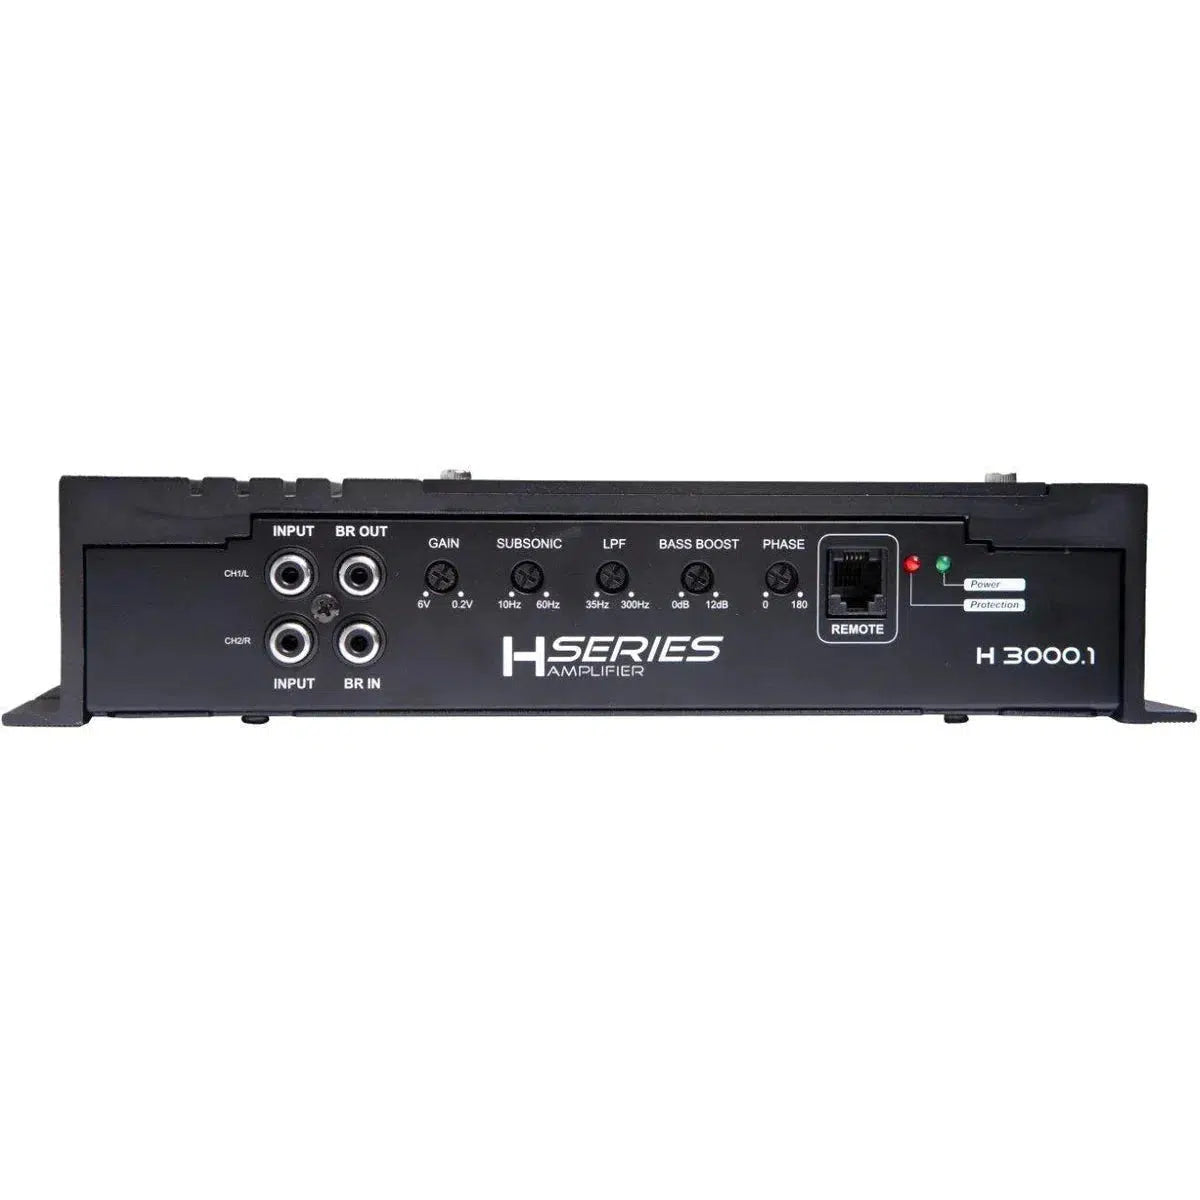 Sistema de audio-Amplificador de 1 canal Helon H-3000.1 D-Masori.de